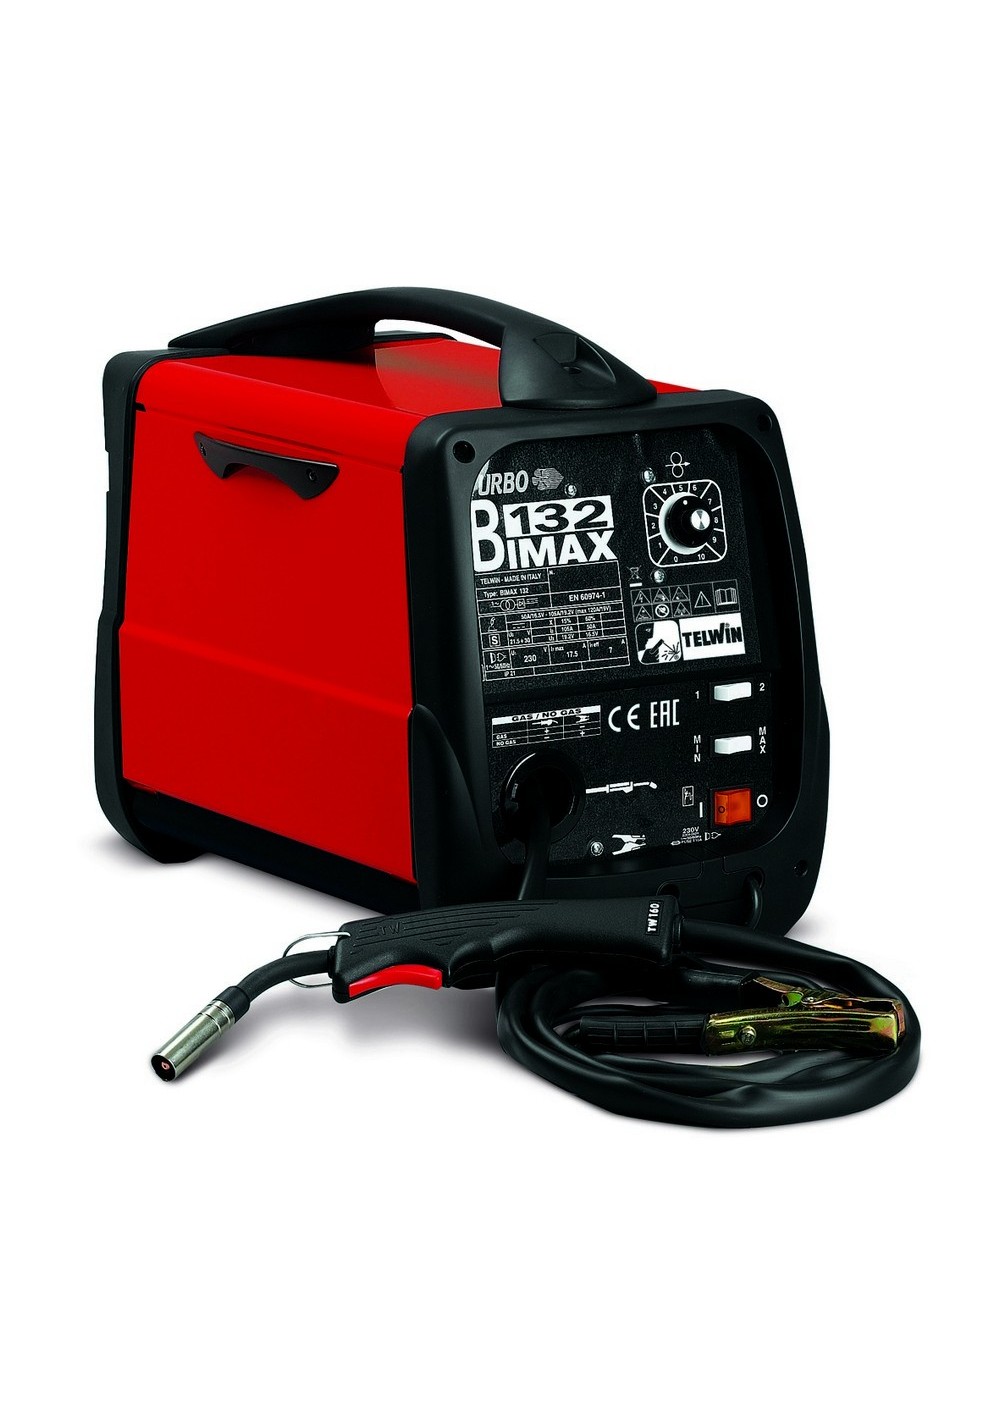 Bimax 132 Turbo 230V Dual Gas